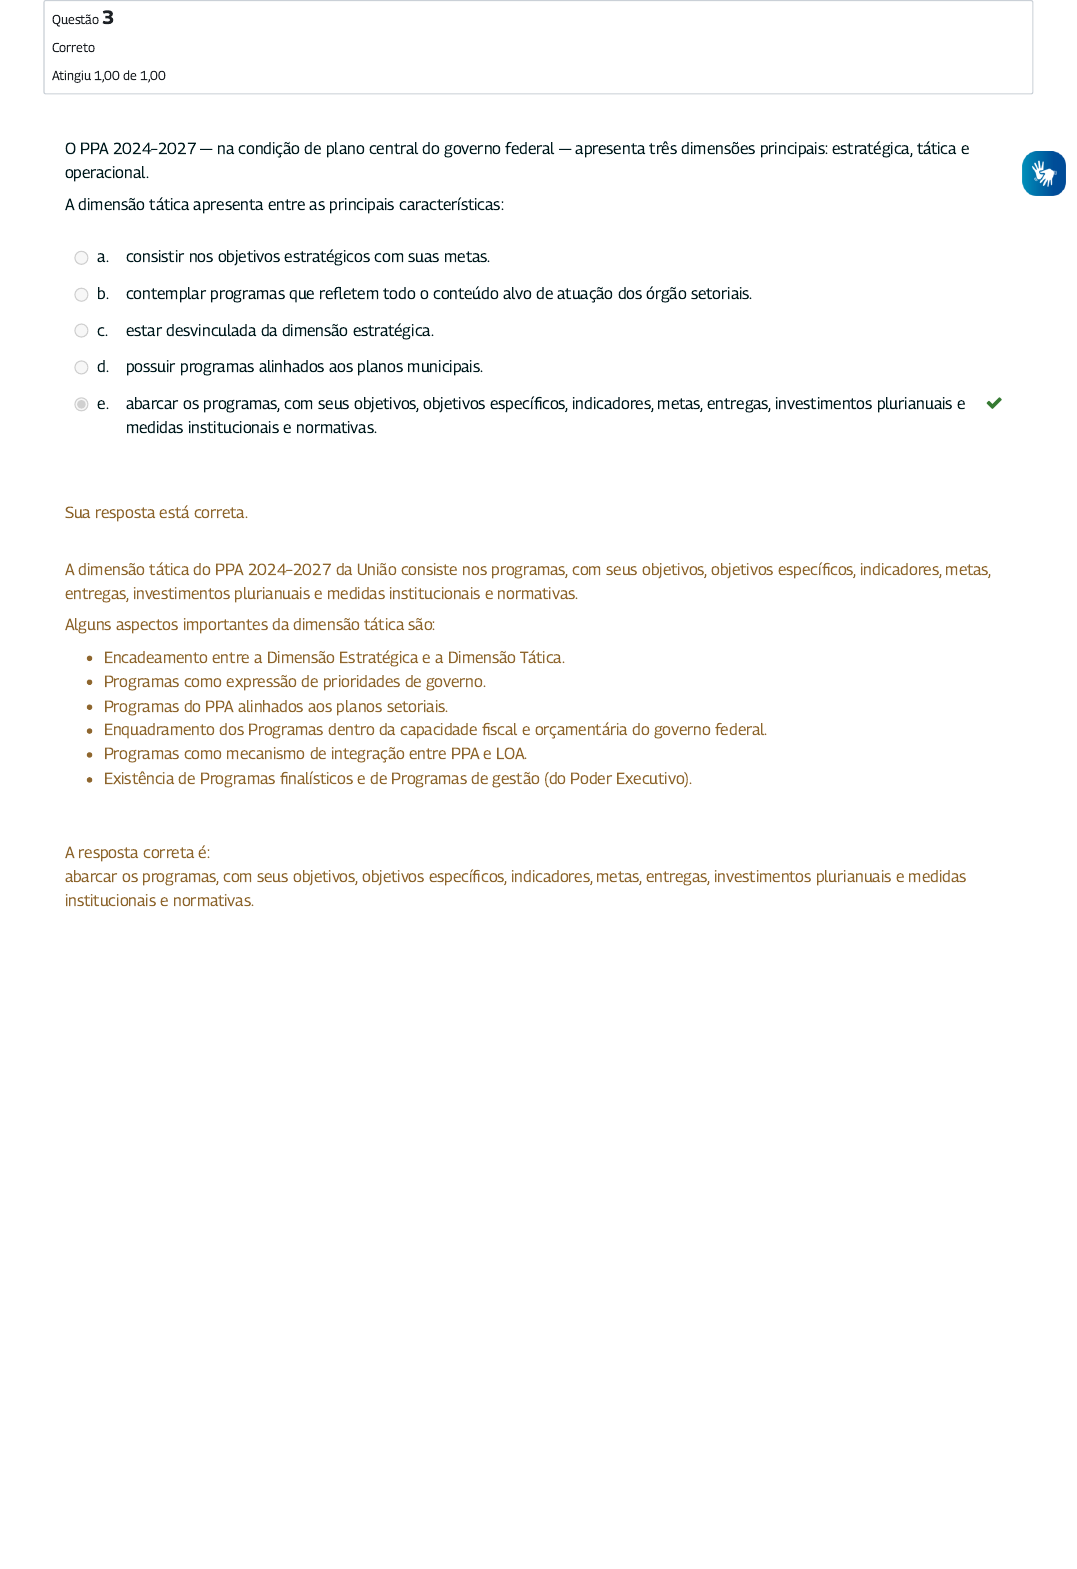 Projeto Acelera CMD - Módulo 1 - 31/03/2022, Oficina de elaboração e  gestão de projetos de impacto social Módulo 1 - Como elaborar uma proposta